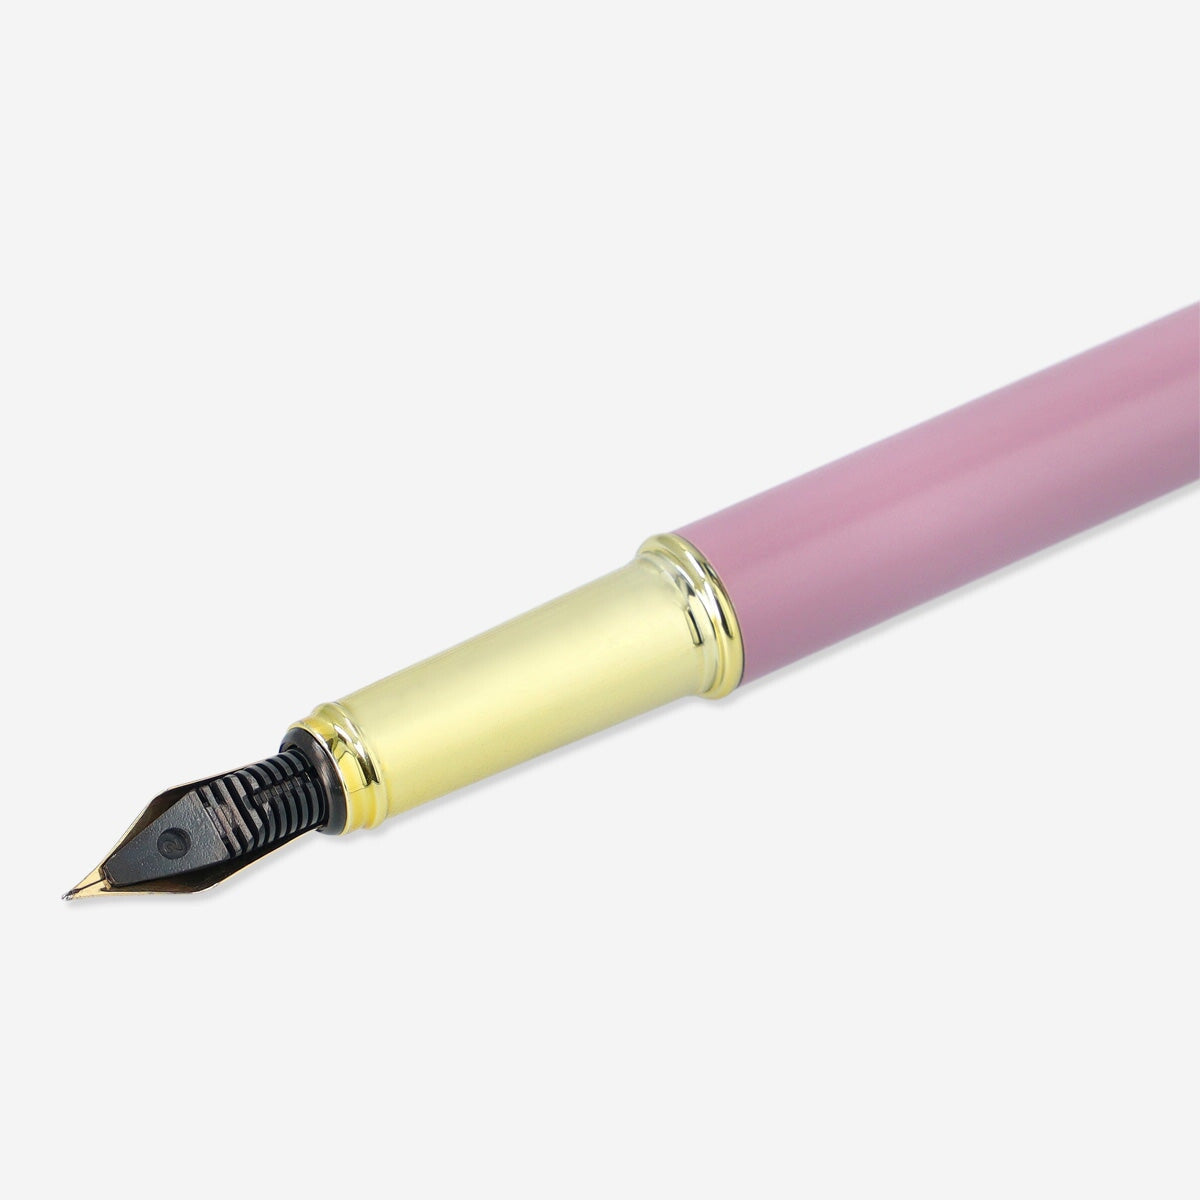 Penna spia P711, la migliore in commercio